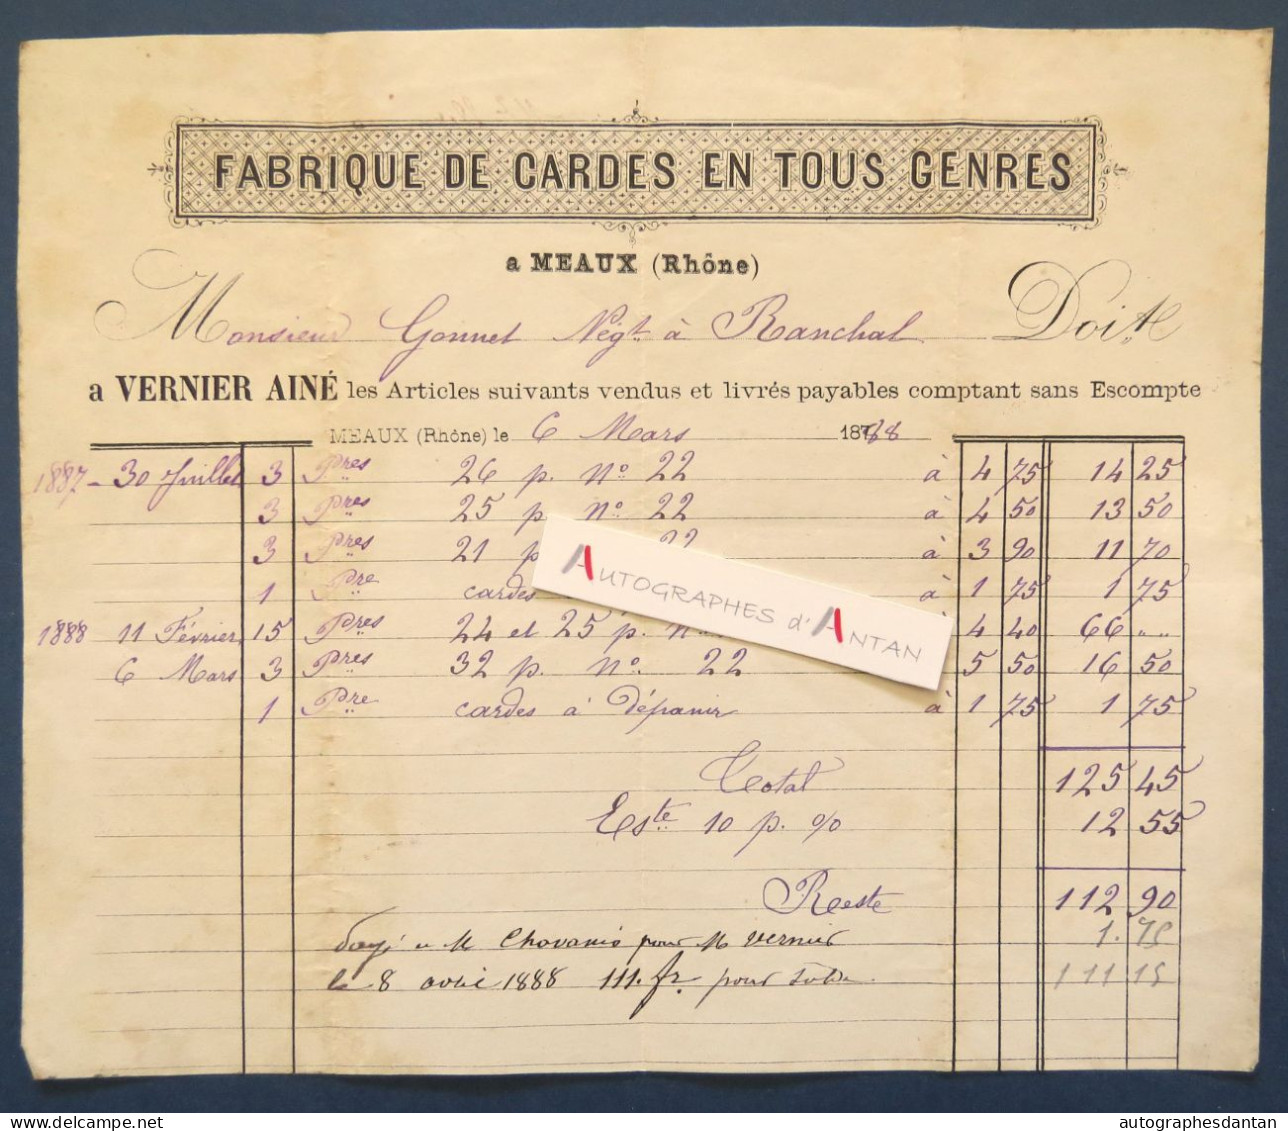 ● MEAUX (la Montagne - Rhône) 1888 - VERNIER Ainé Fabrique De Cardes En Tous Gens - Rare Facture - Gonnet à Ranchal - Artigianato